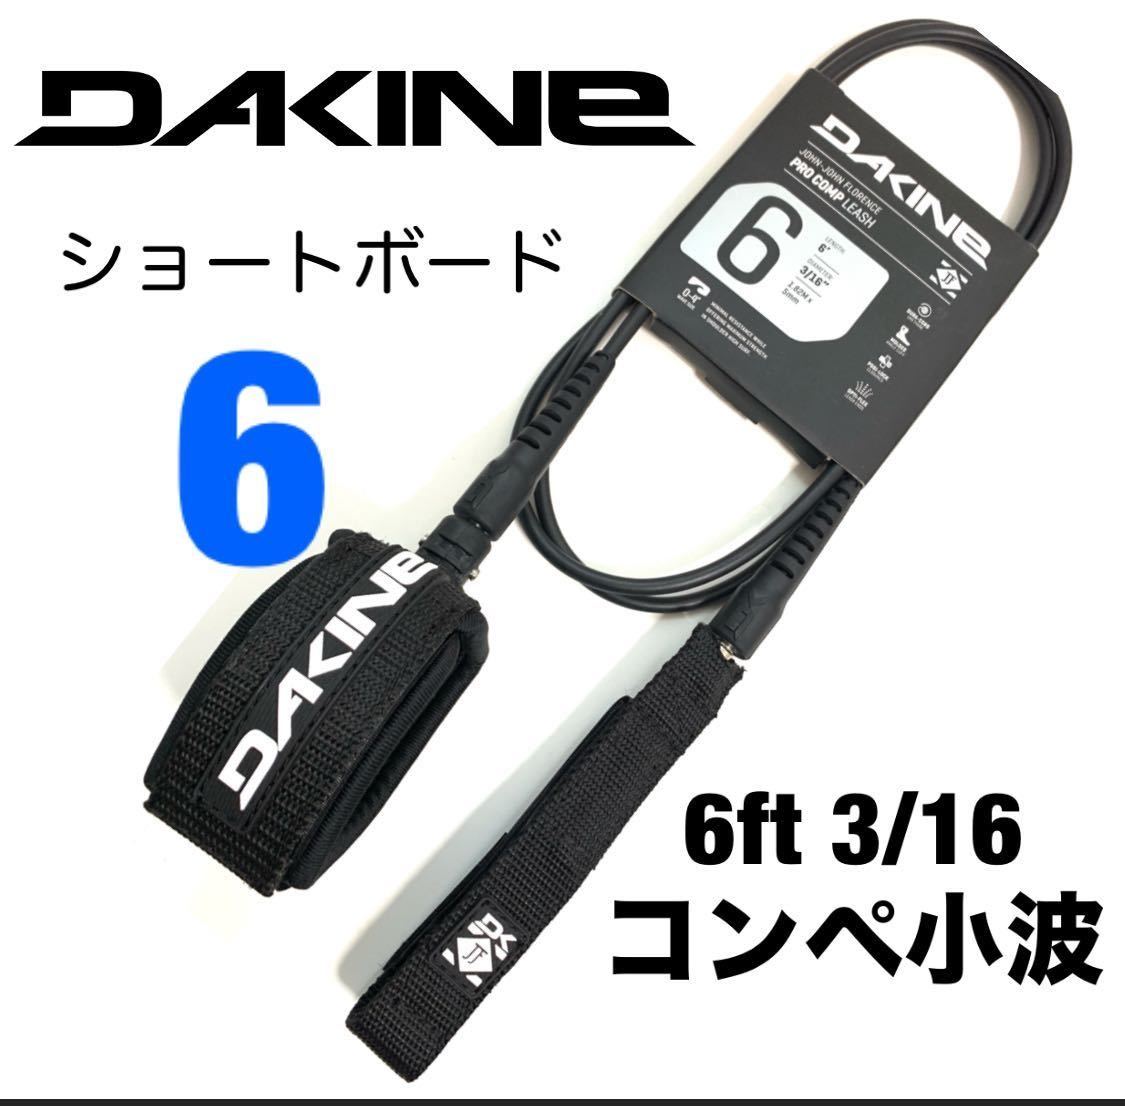 6ft DAKINE ダカイン コンプ 小波 リーシュコード ショートボード FCS ブラック